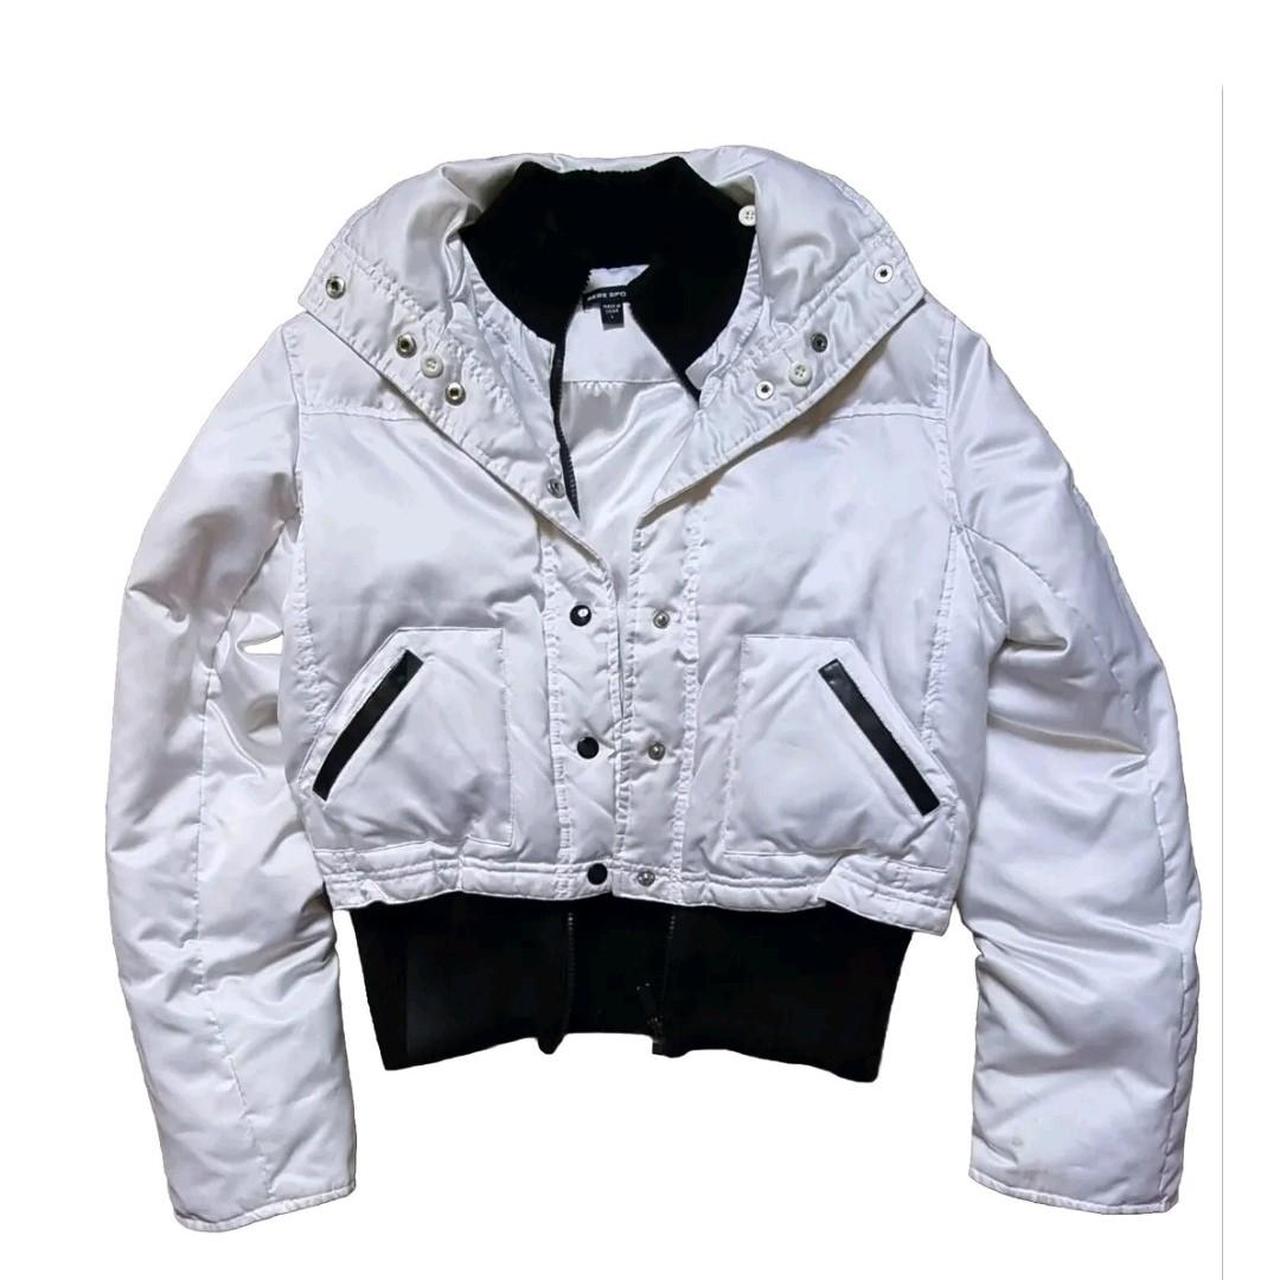 Bebe Sport cropped jacket size L on label but jacket... - Depop